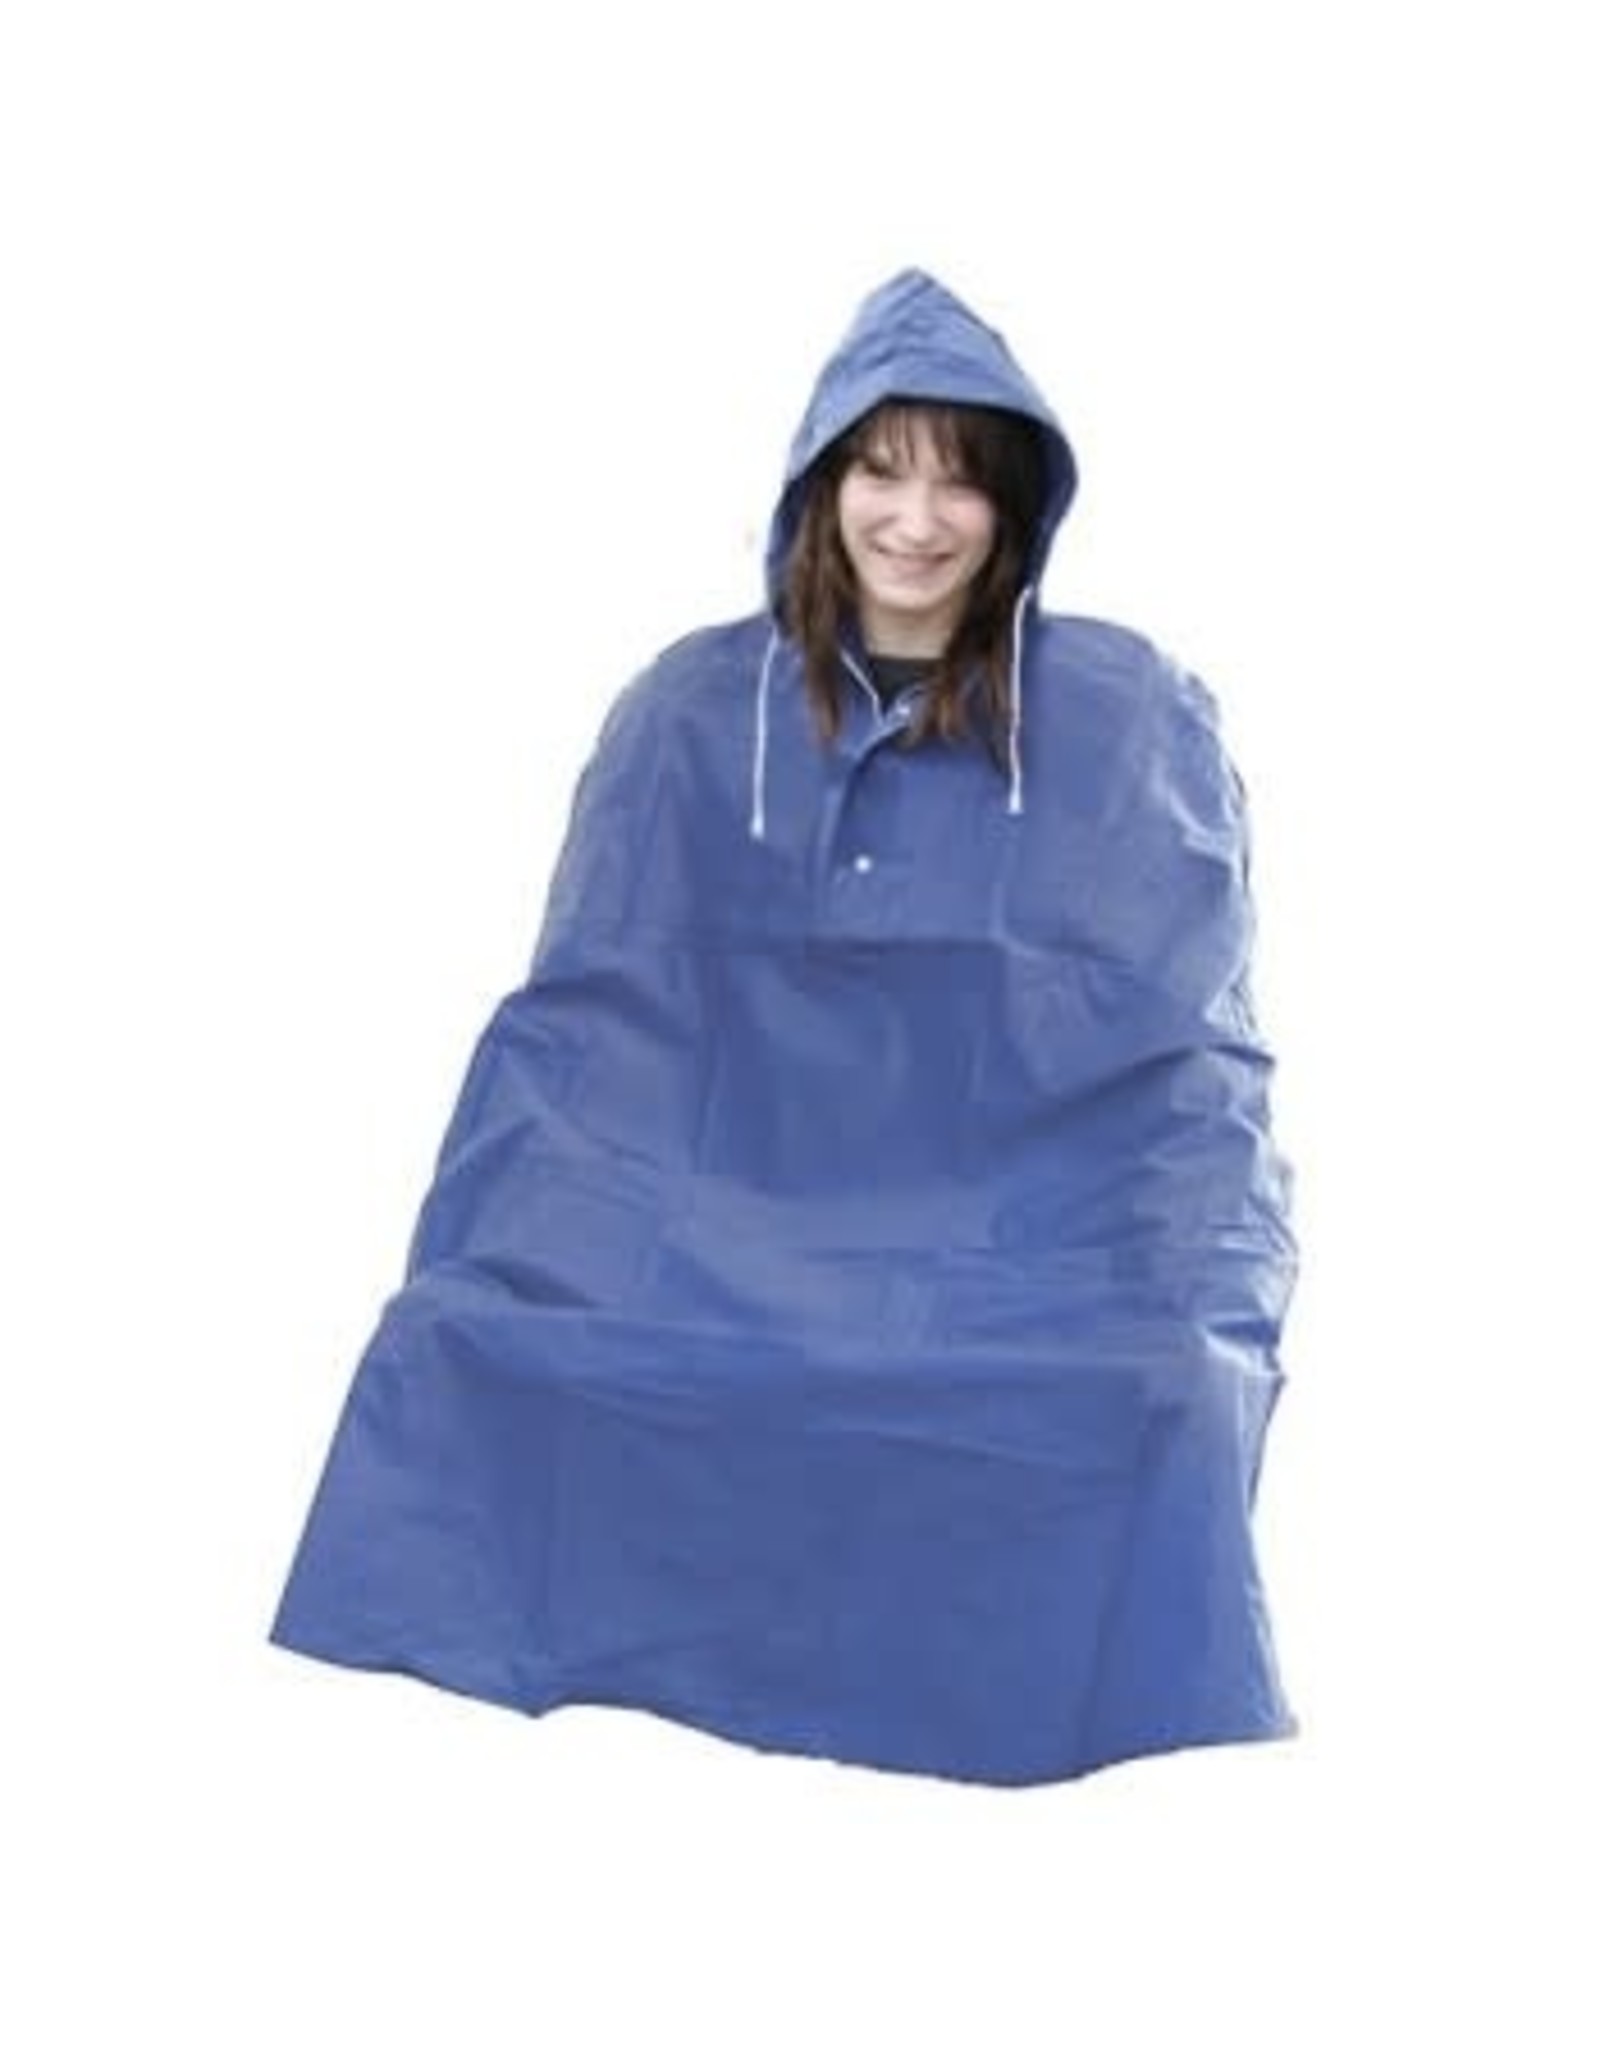 Poncho Rain  Blue Coat